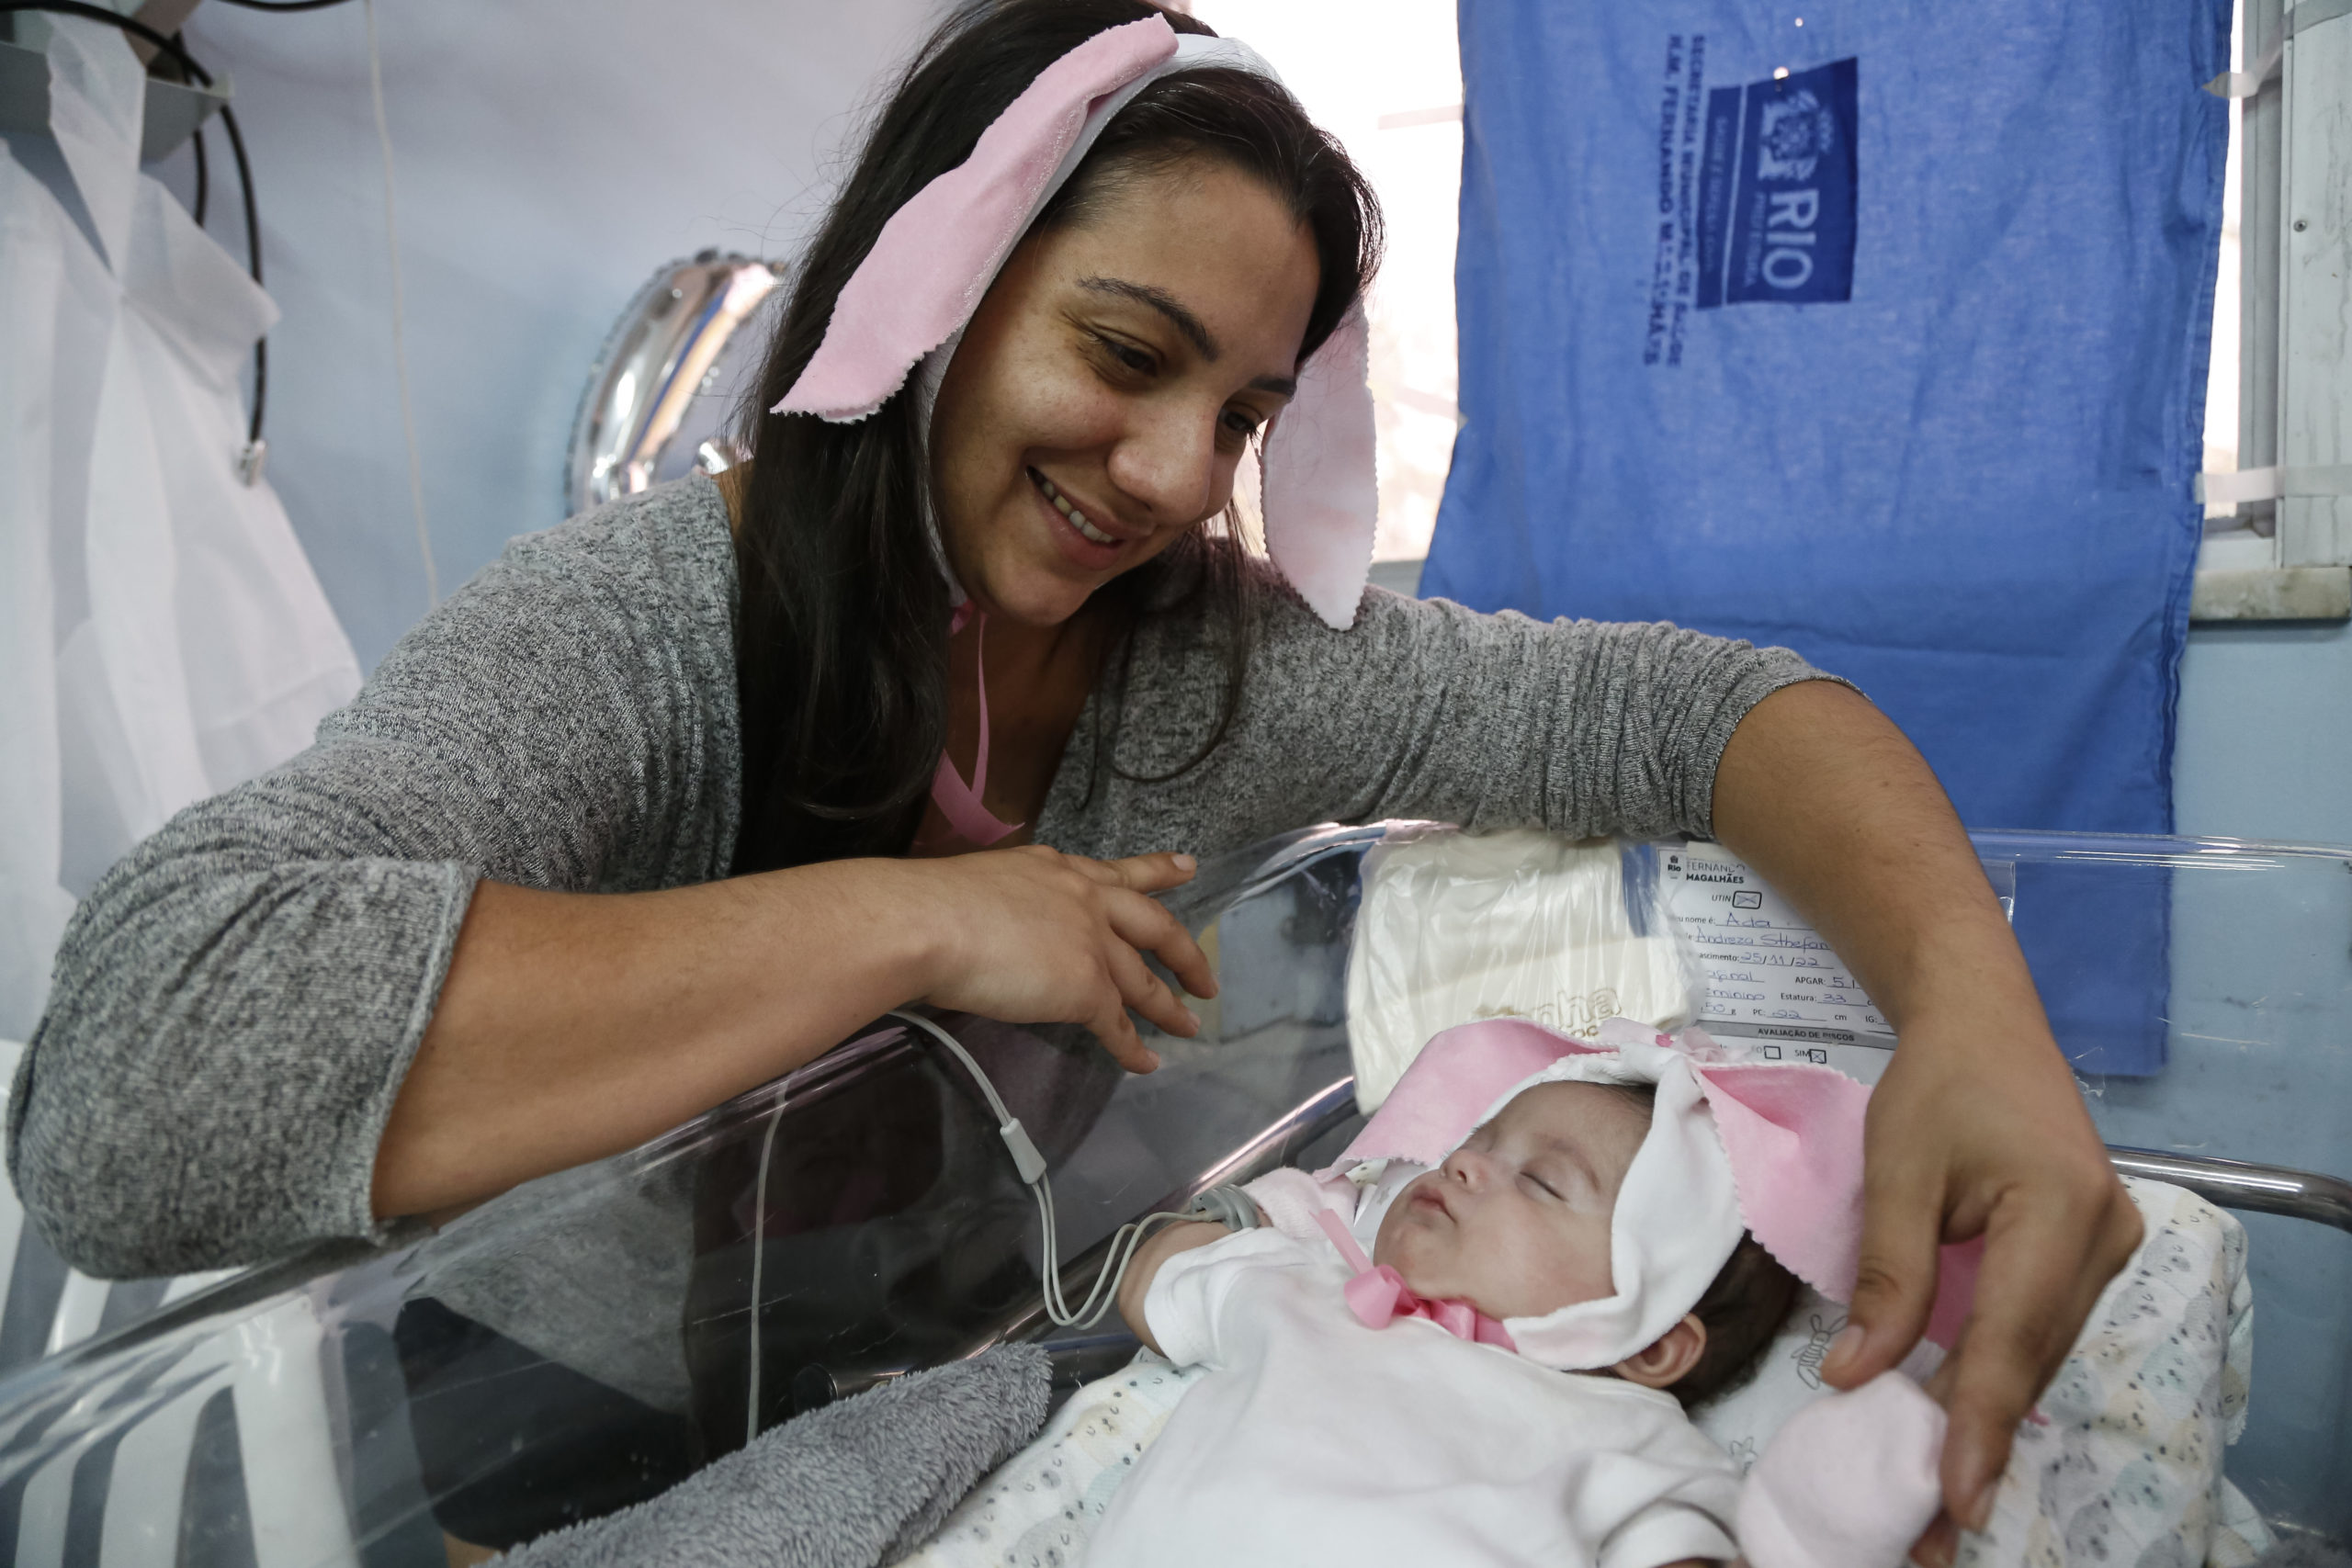 Secretaria municipal de Saúde promove ação de Páscoa com bebês internados